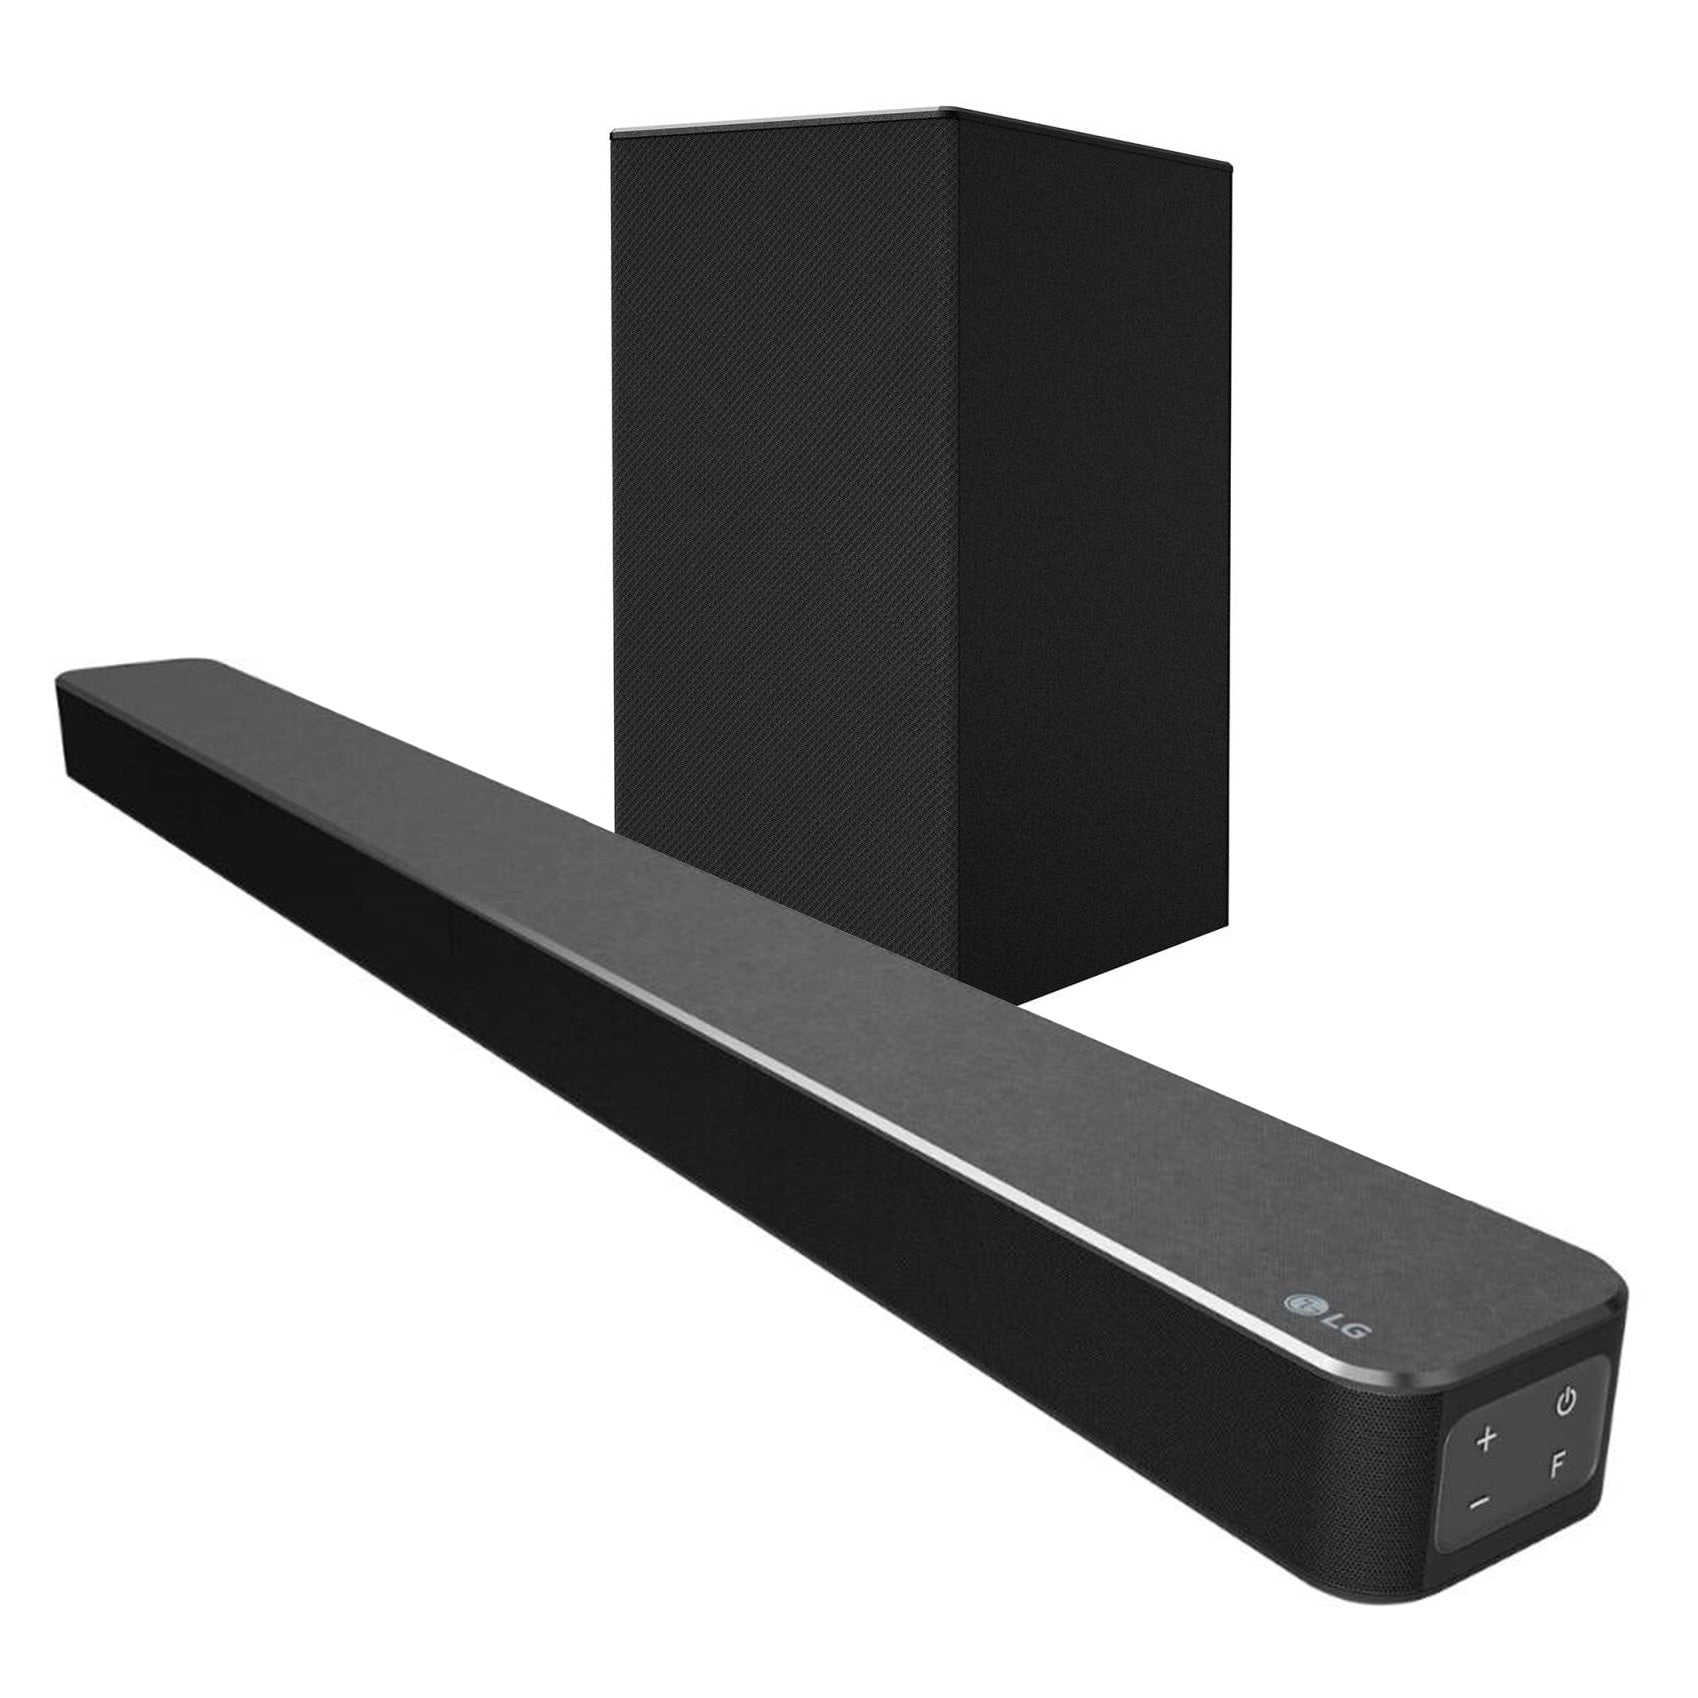 Barra de Sonido LG SN5 | 400W | 2.1 Canales | Bluetooth | HDMI - Multimax